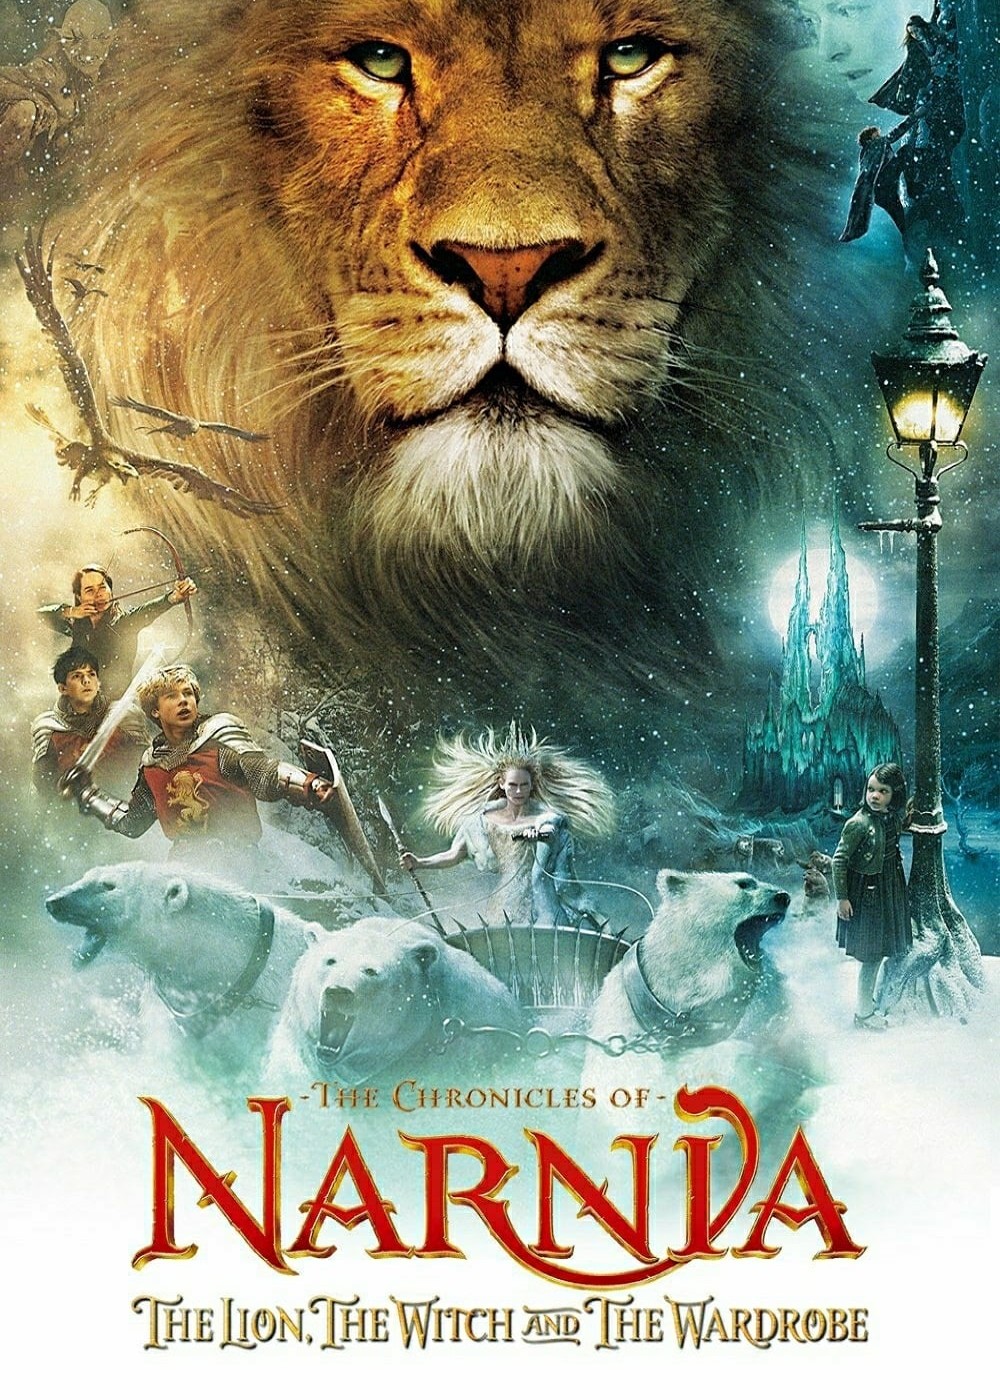 Biên Niên Sử Narnia: Sư Tử, Phù Thủy và Cái Tủ Áo 2005